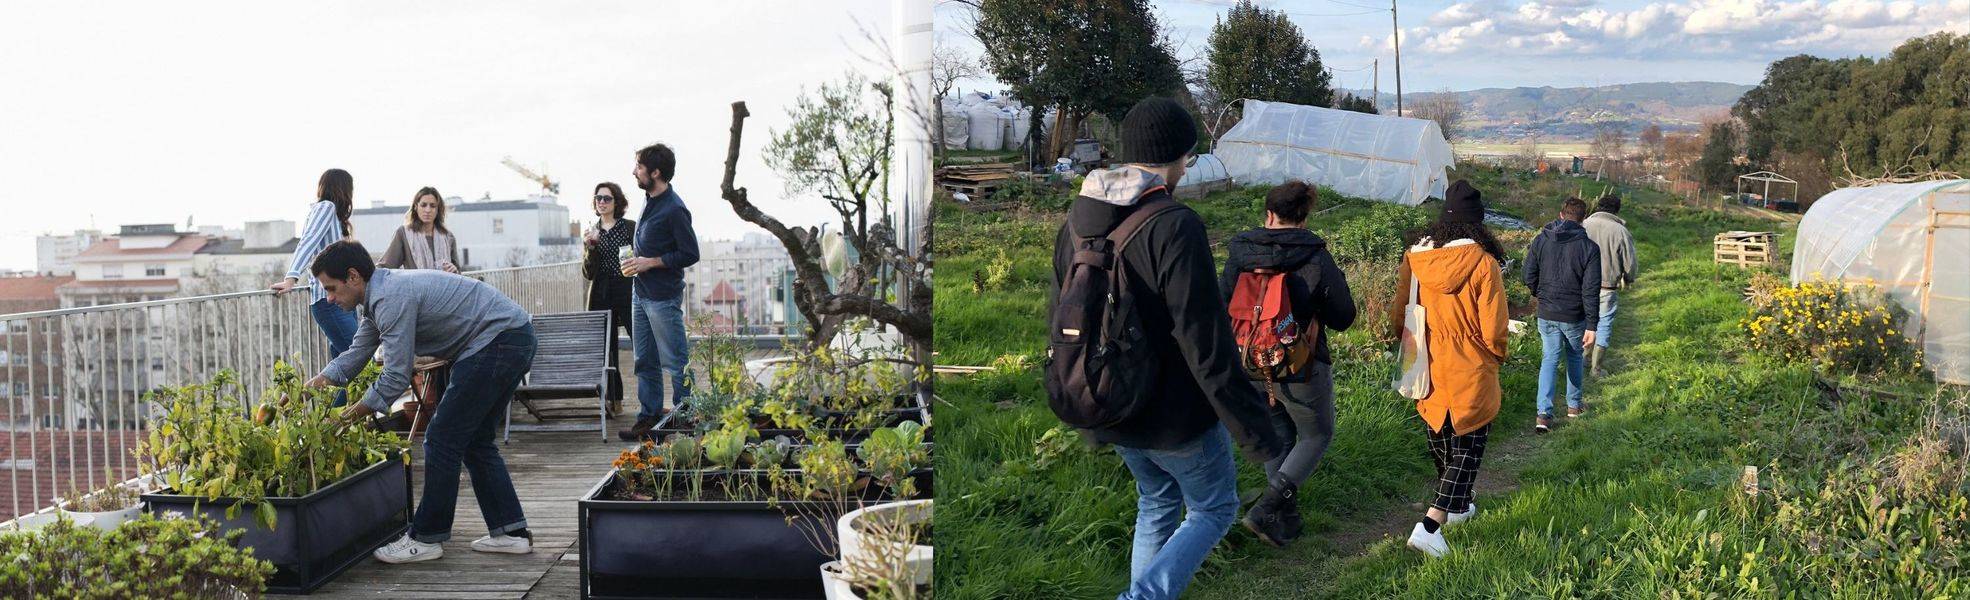 Volunteers in the permaculture garden project in Spain